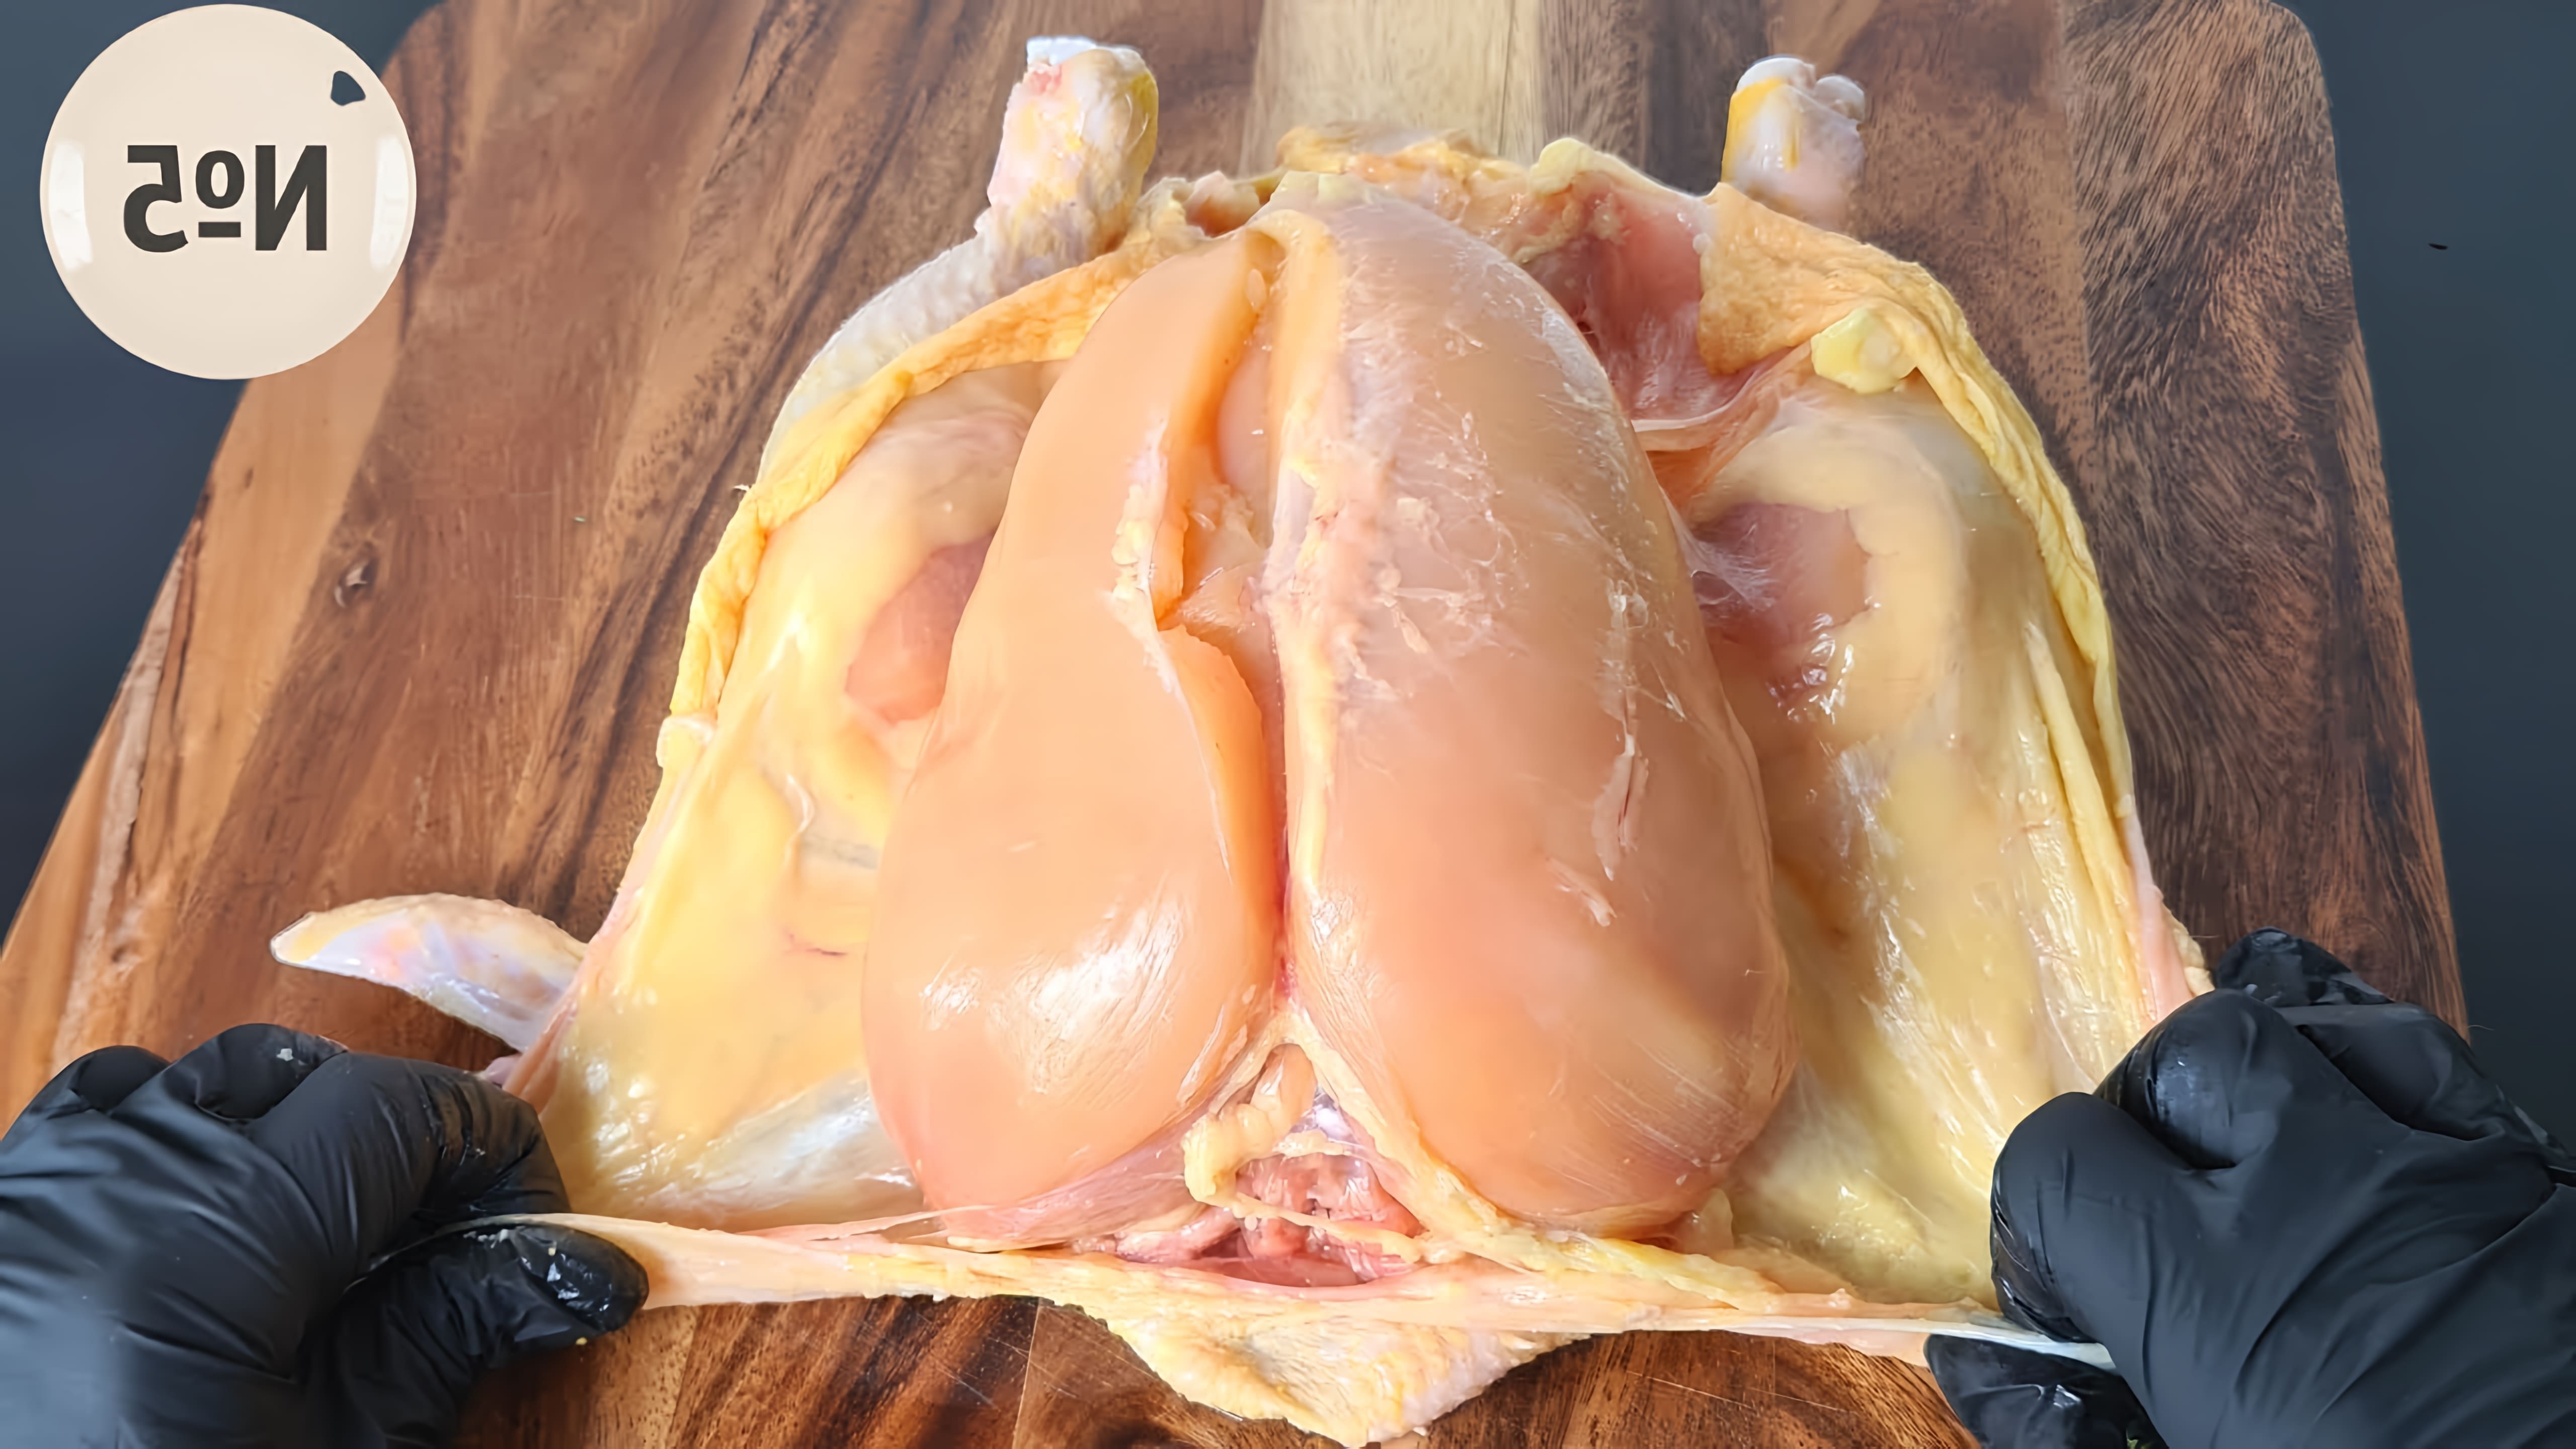 В этом видео демонстрируются три диетических блюда, которые можно приготовить, используя всего одну курицу